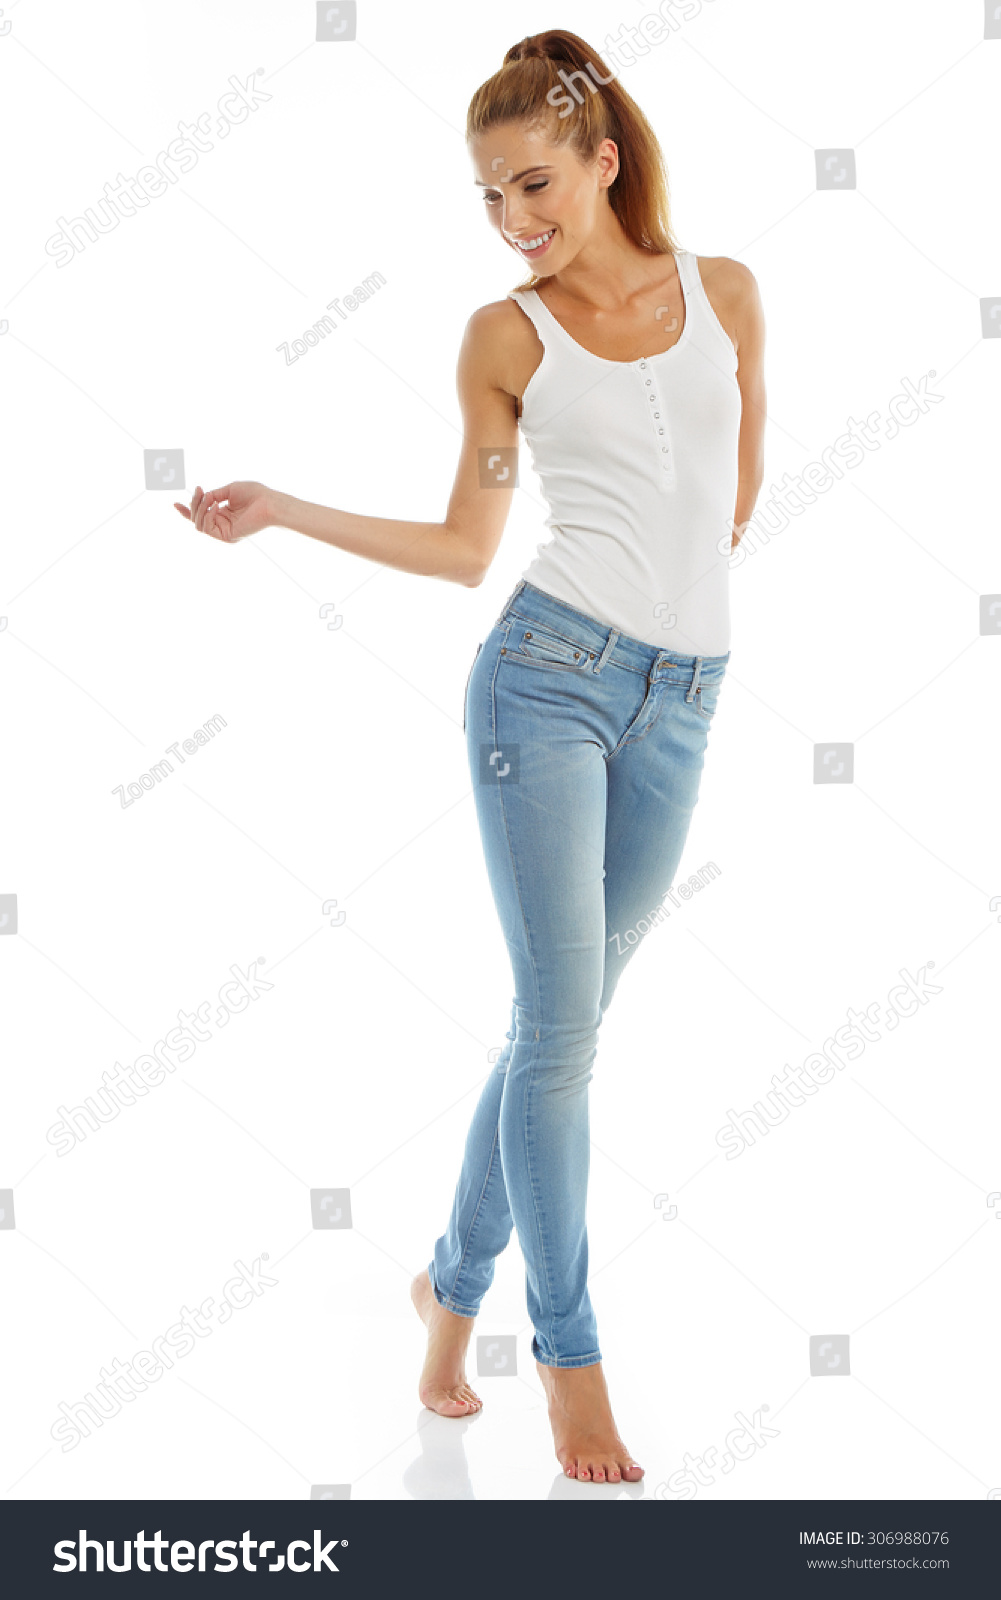 Молодая девушка снимает джинсы и майку